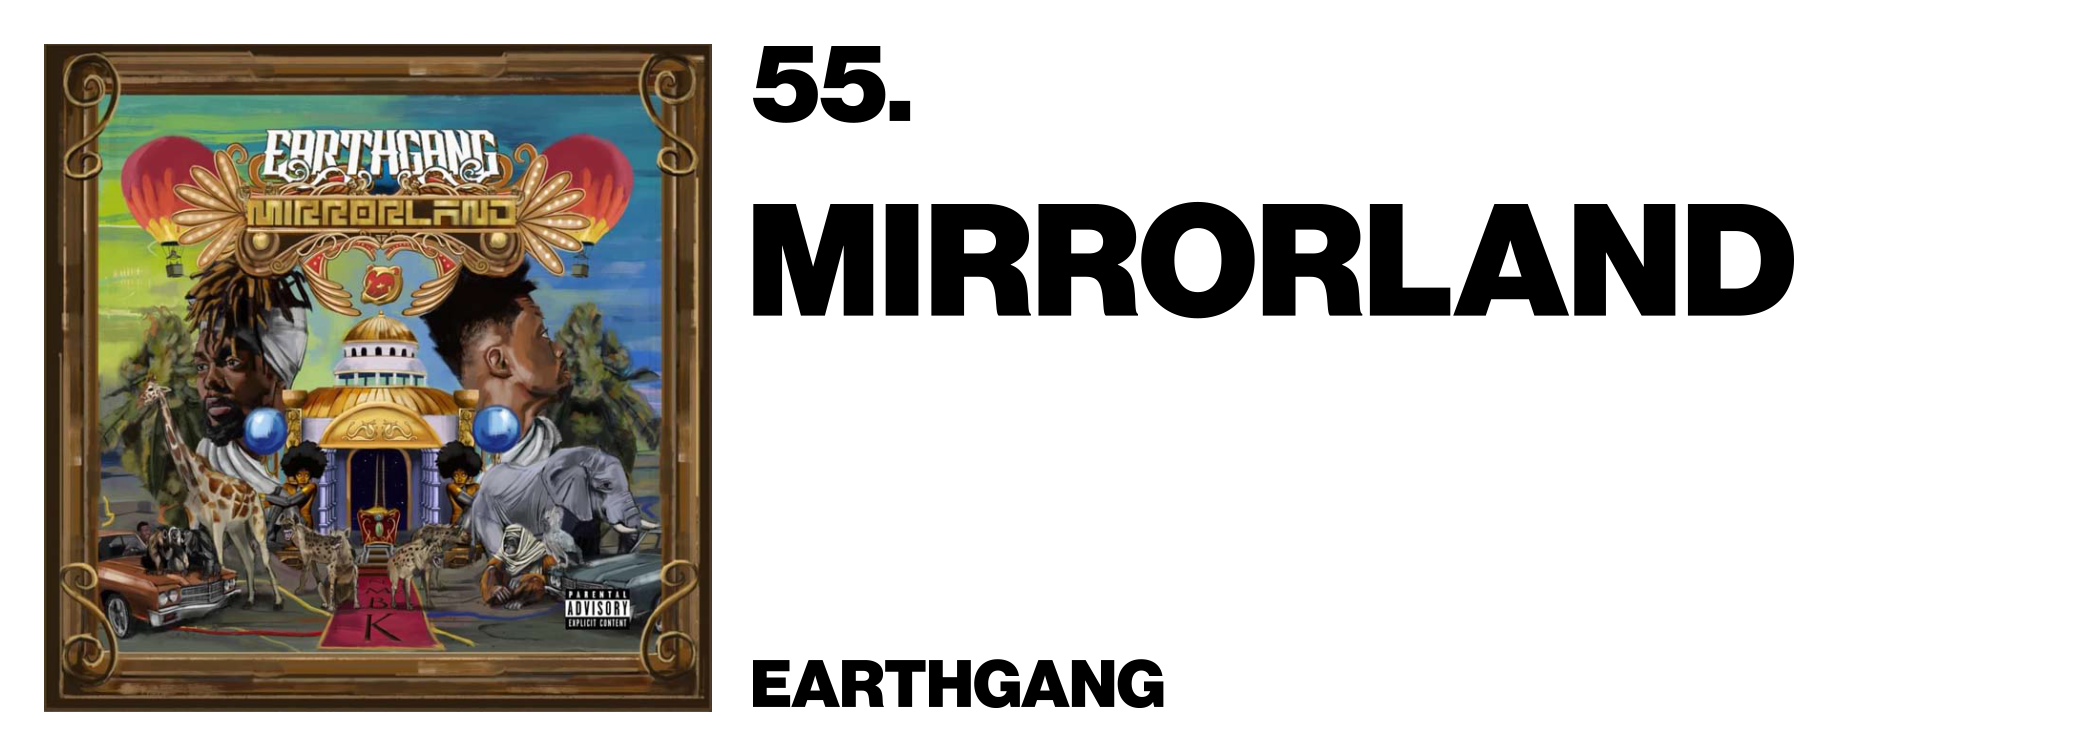 1575928279515-55-Earthgang-Mirrorland